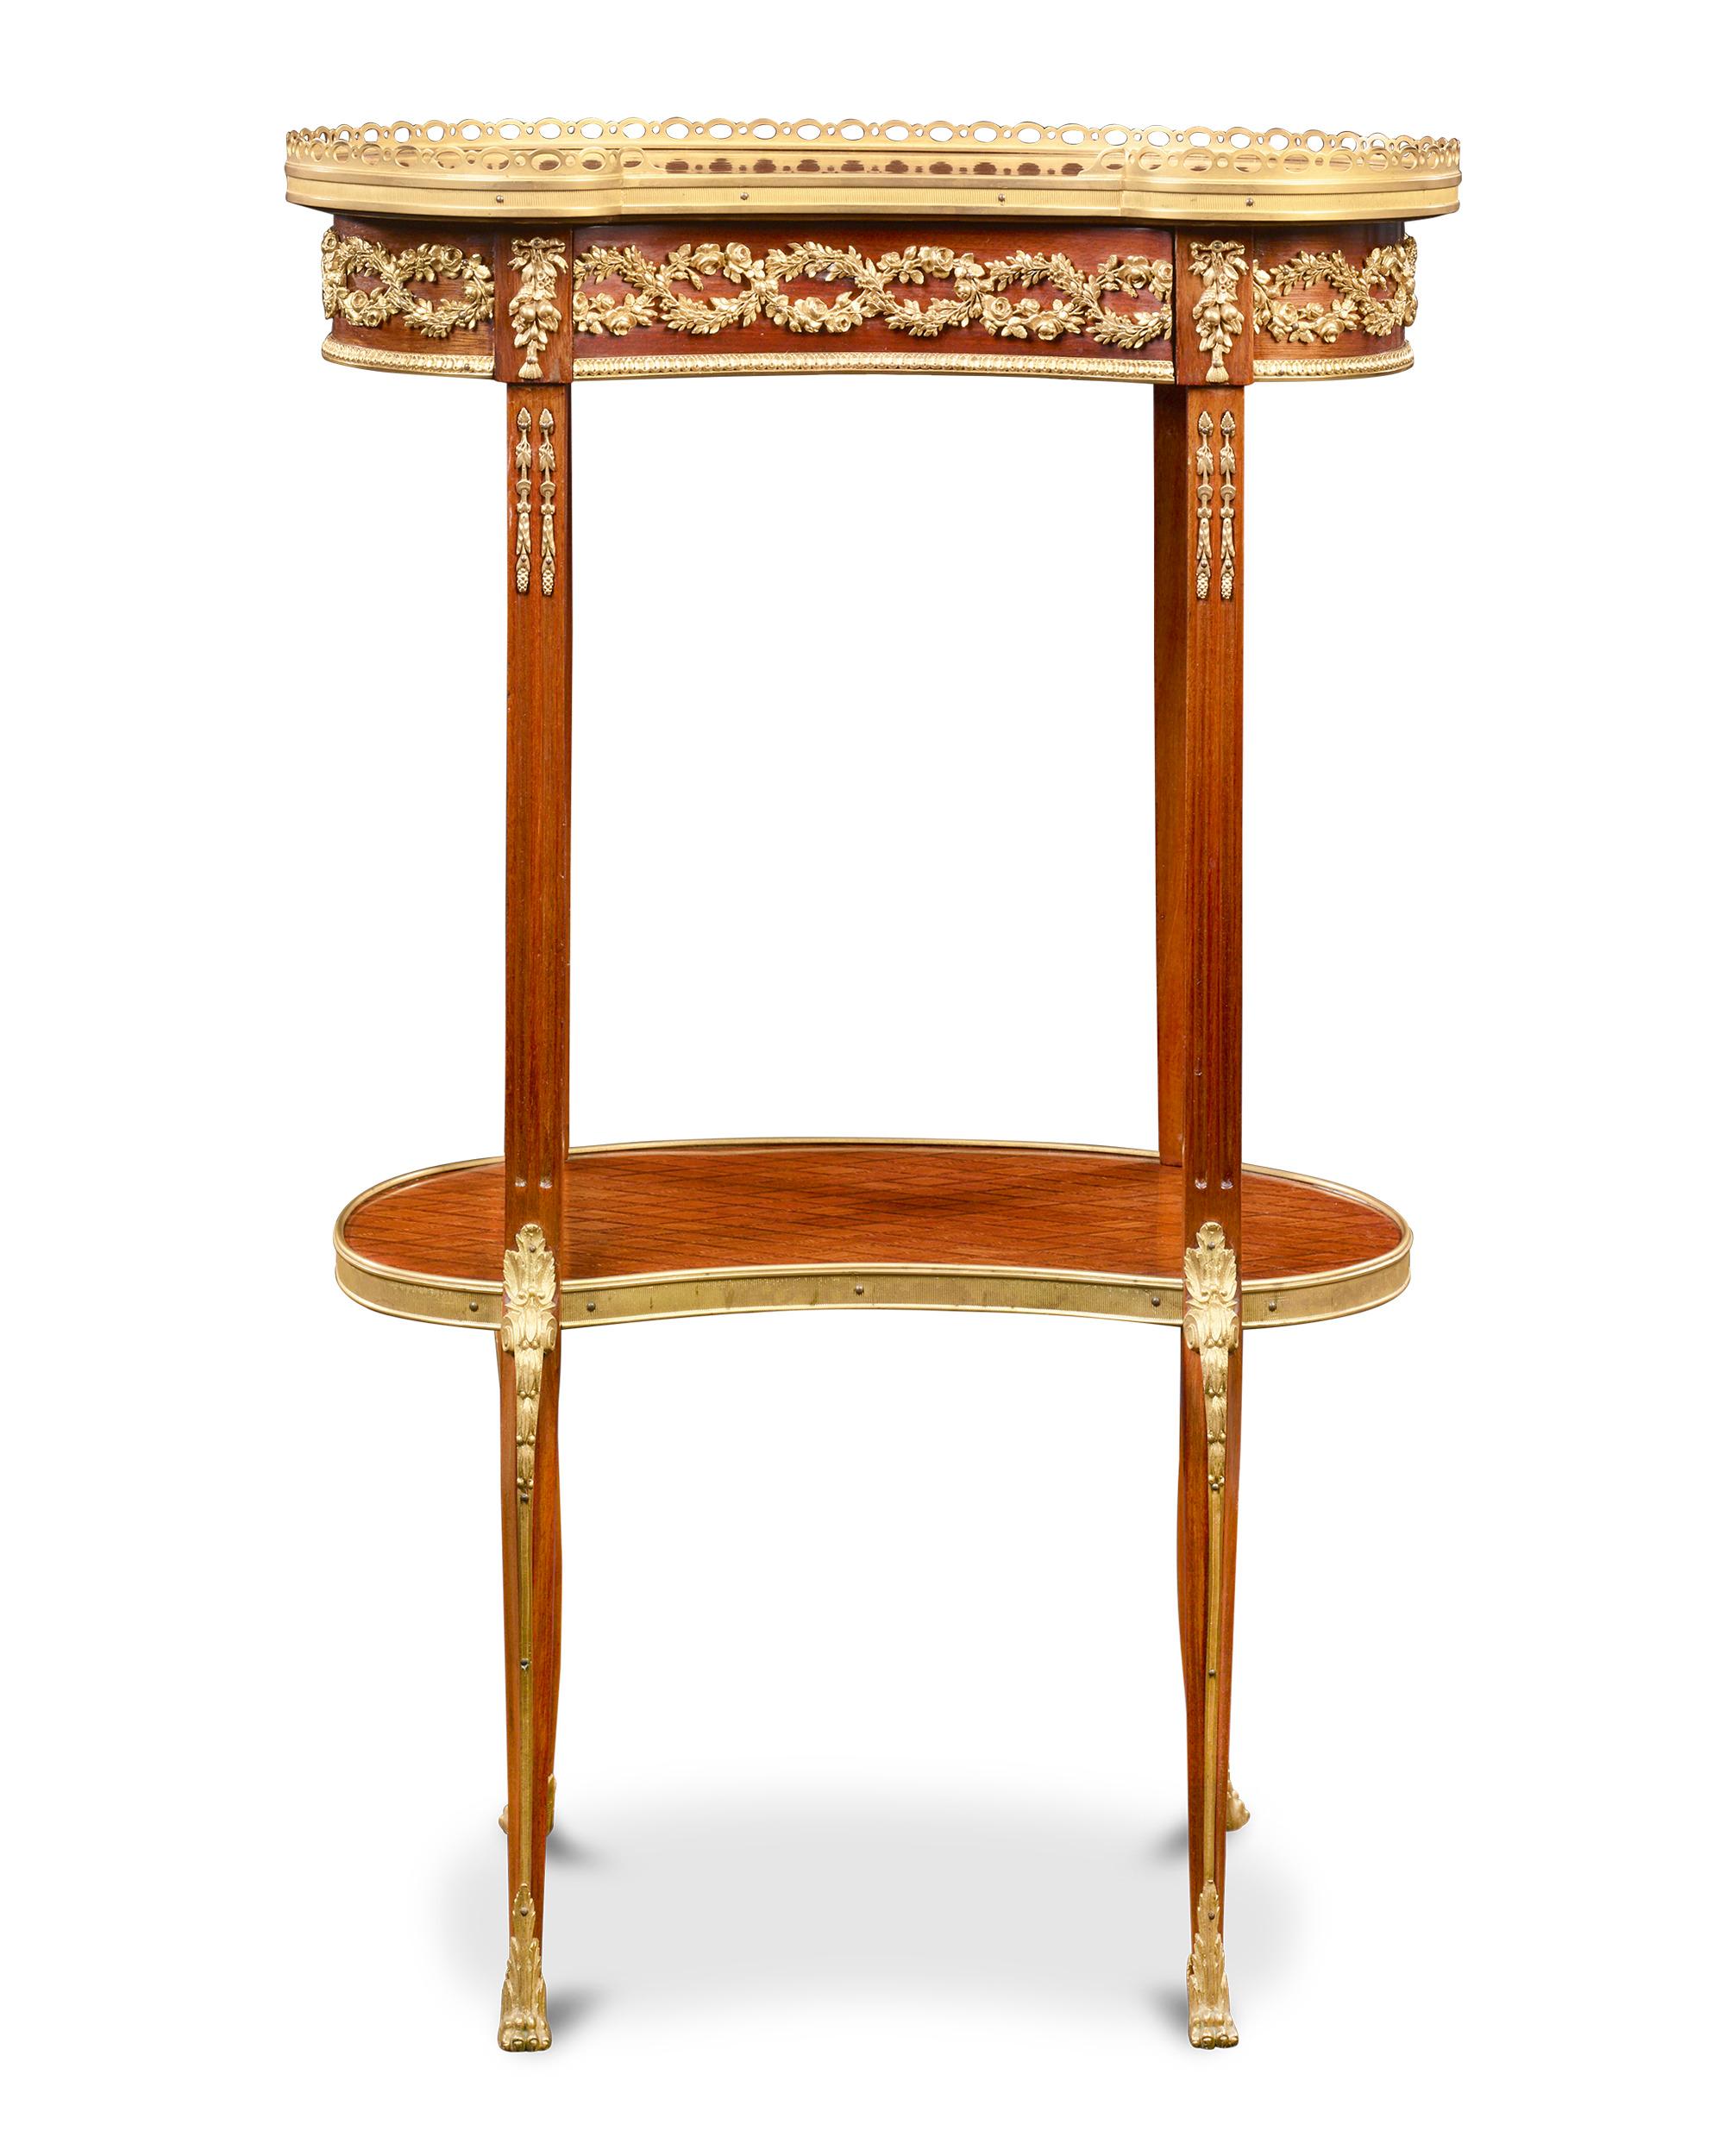 De style Louis XVI, cette élégante table d'appoint en marqueterie française en forme de rein est décorée d'une riche incrustation en forme de diamant. La chaleur naturelle du bois transparaît et est parfaitement complétée par les montures en bronze